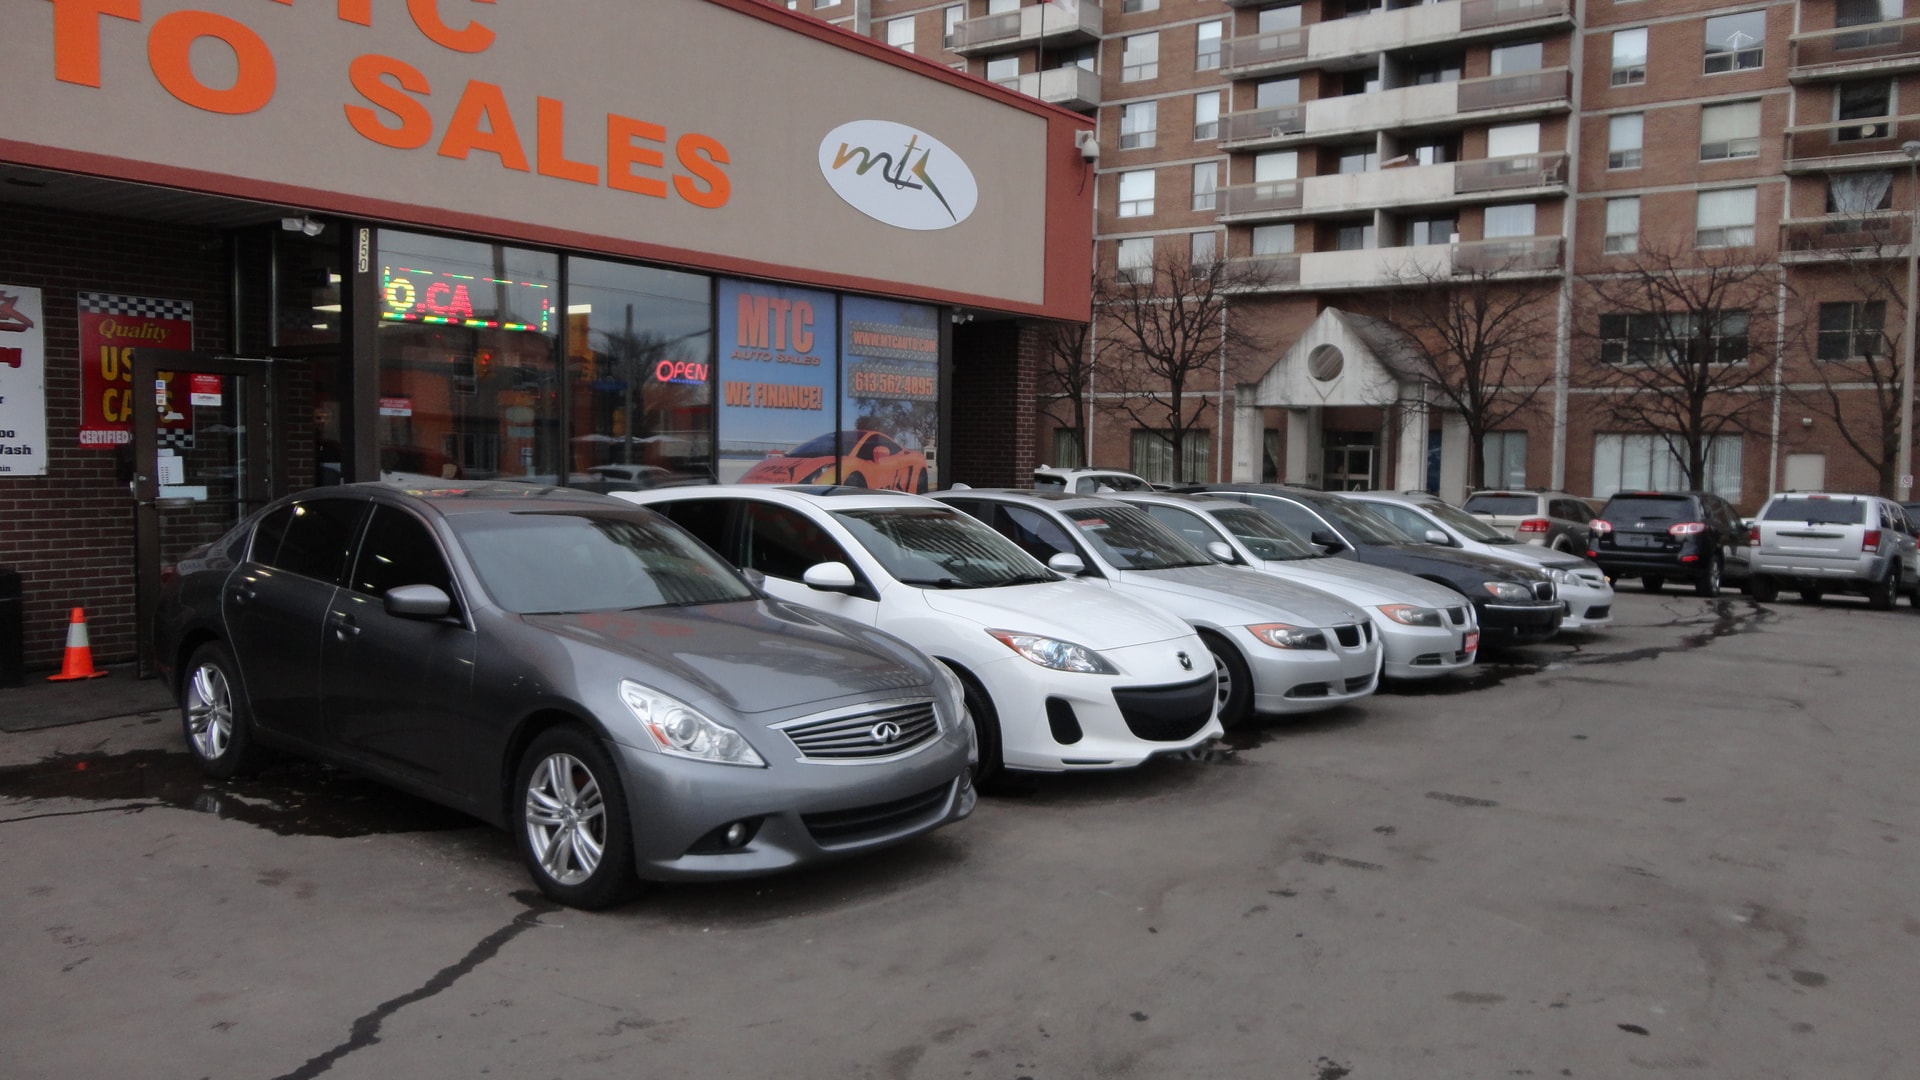 mtc auto sales | used dealership in ottawa, on k1l 6a9